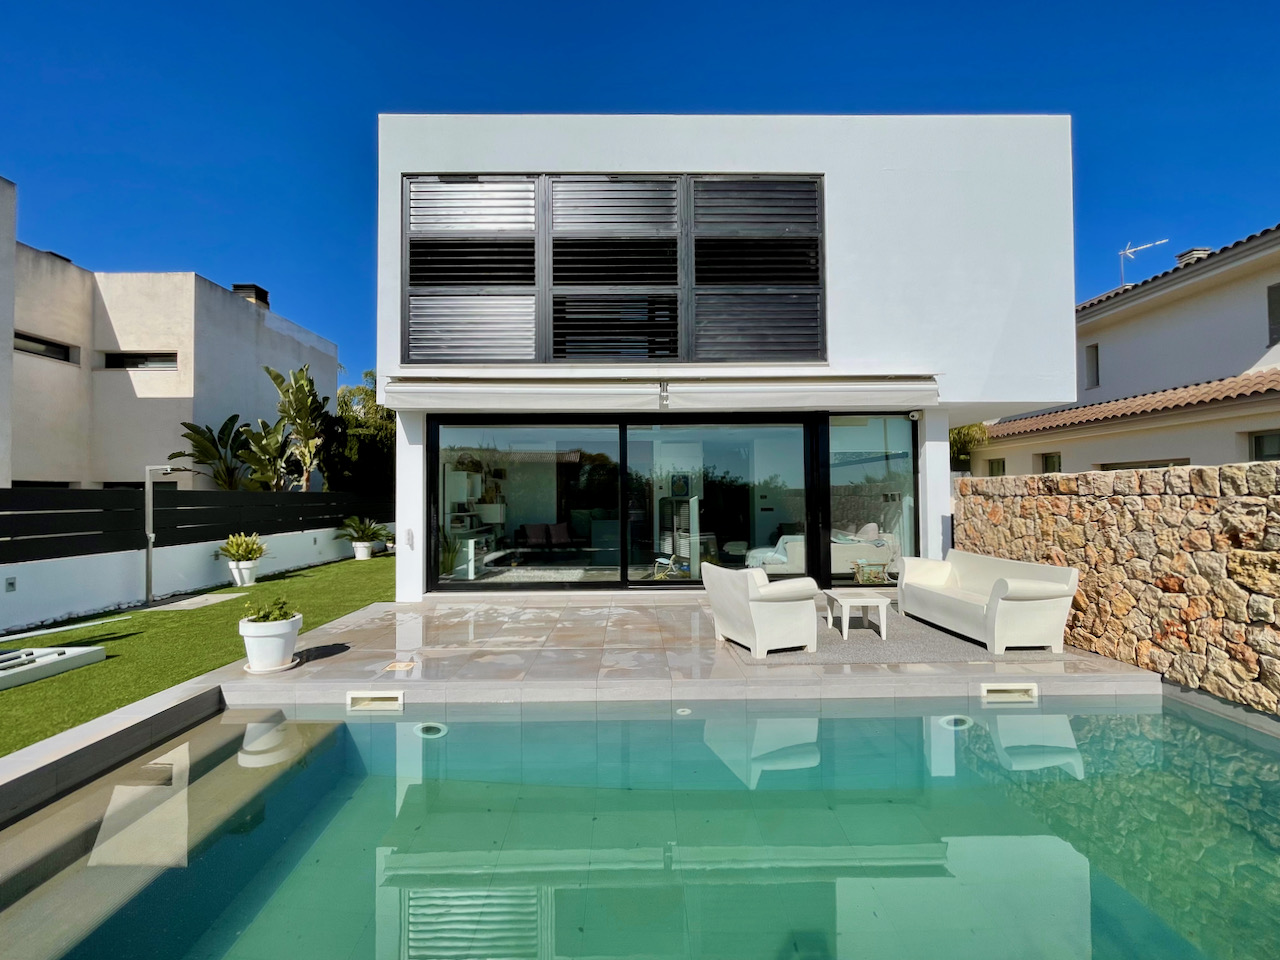 Fantastische villa met zwembad in de urbanisatie Son Puig, Palma.